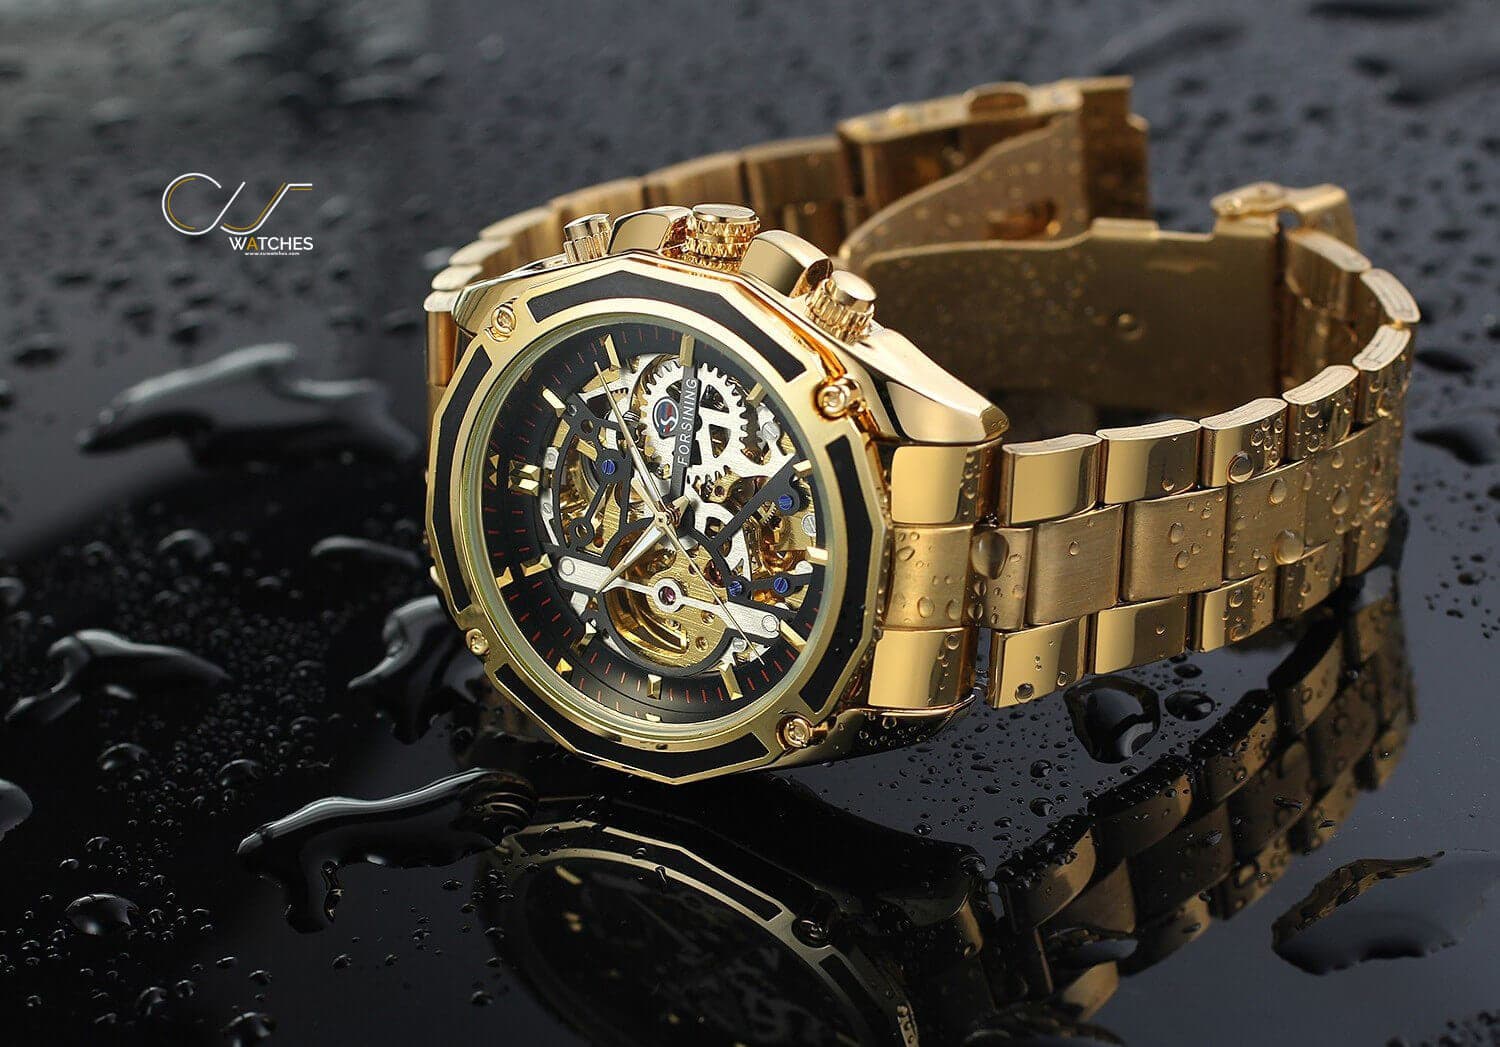 นาฬิกาข้อมือ Forsining สายสแตนเลสทอง รุ่น GMT982